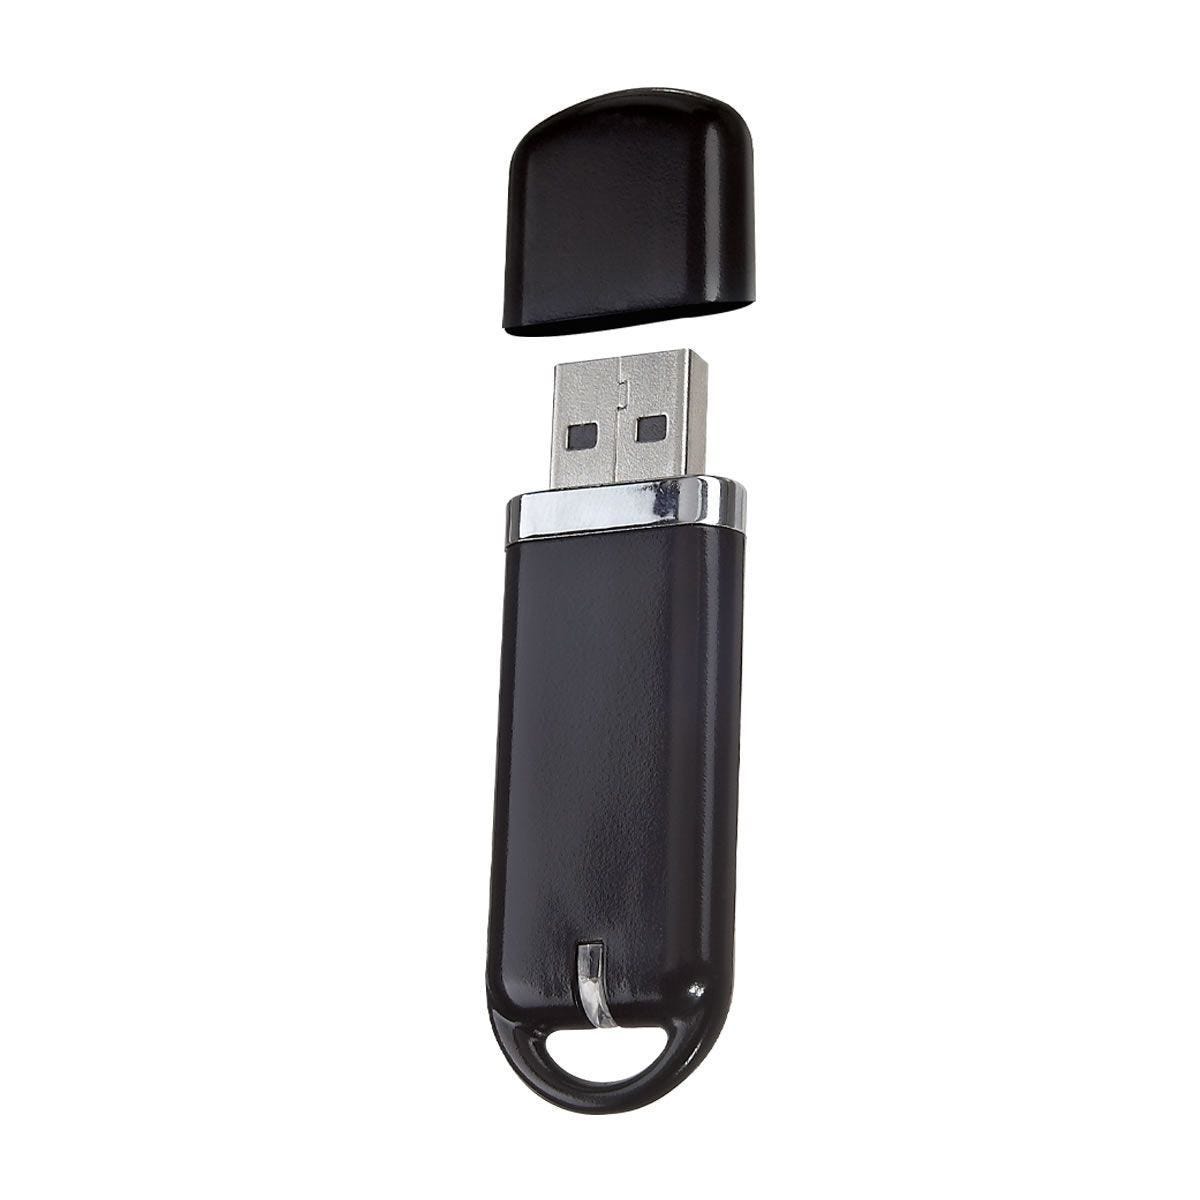 USB 220, USB STORAGE. Se enciende LED de color al conectar. Incluye caja individual.